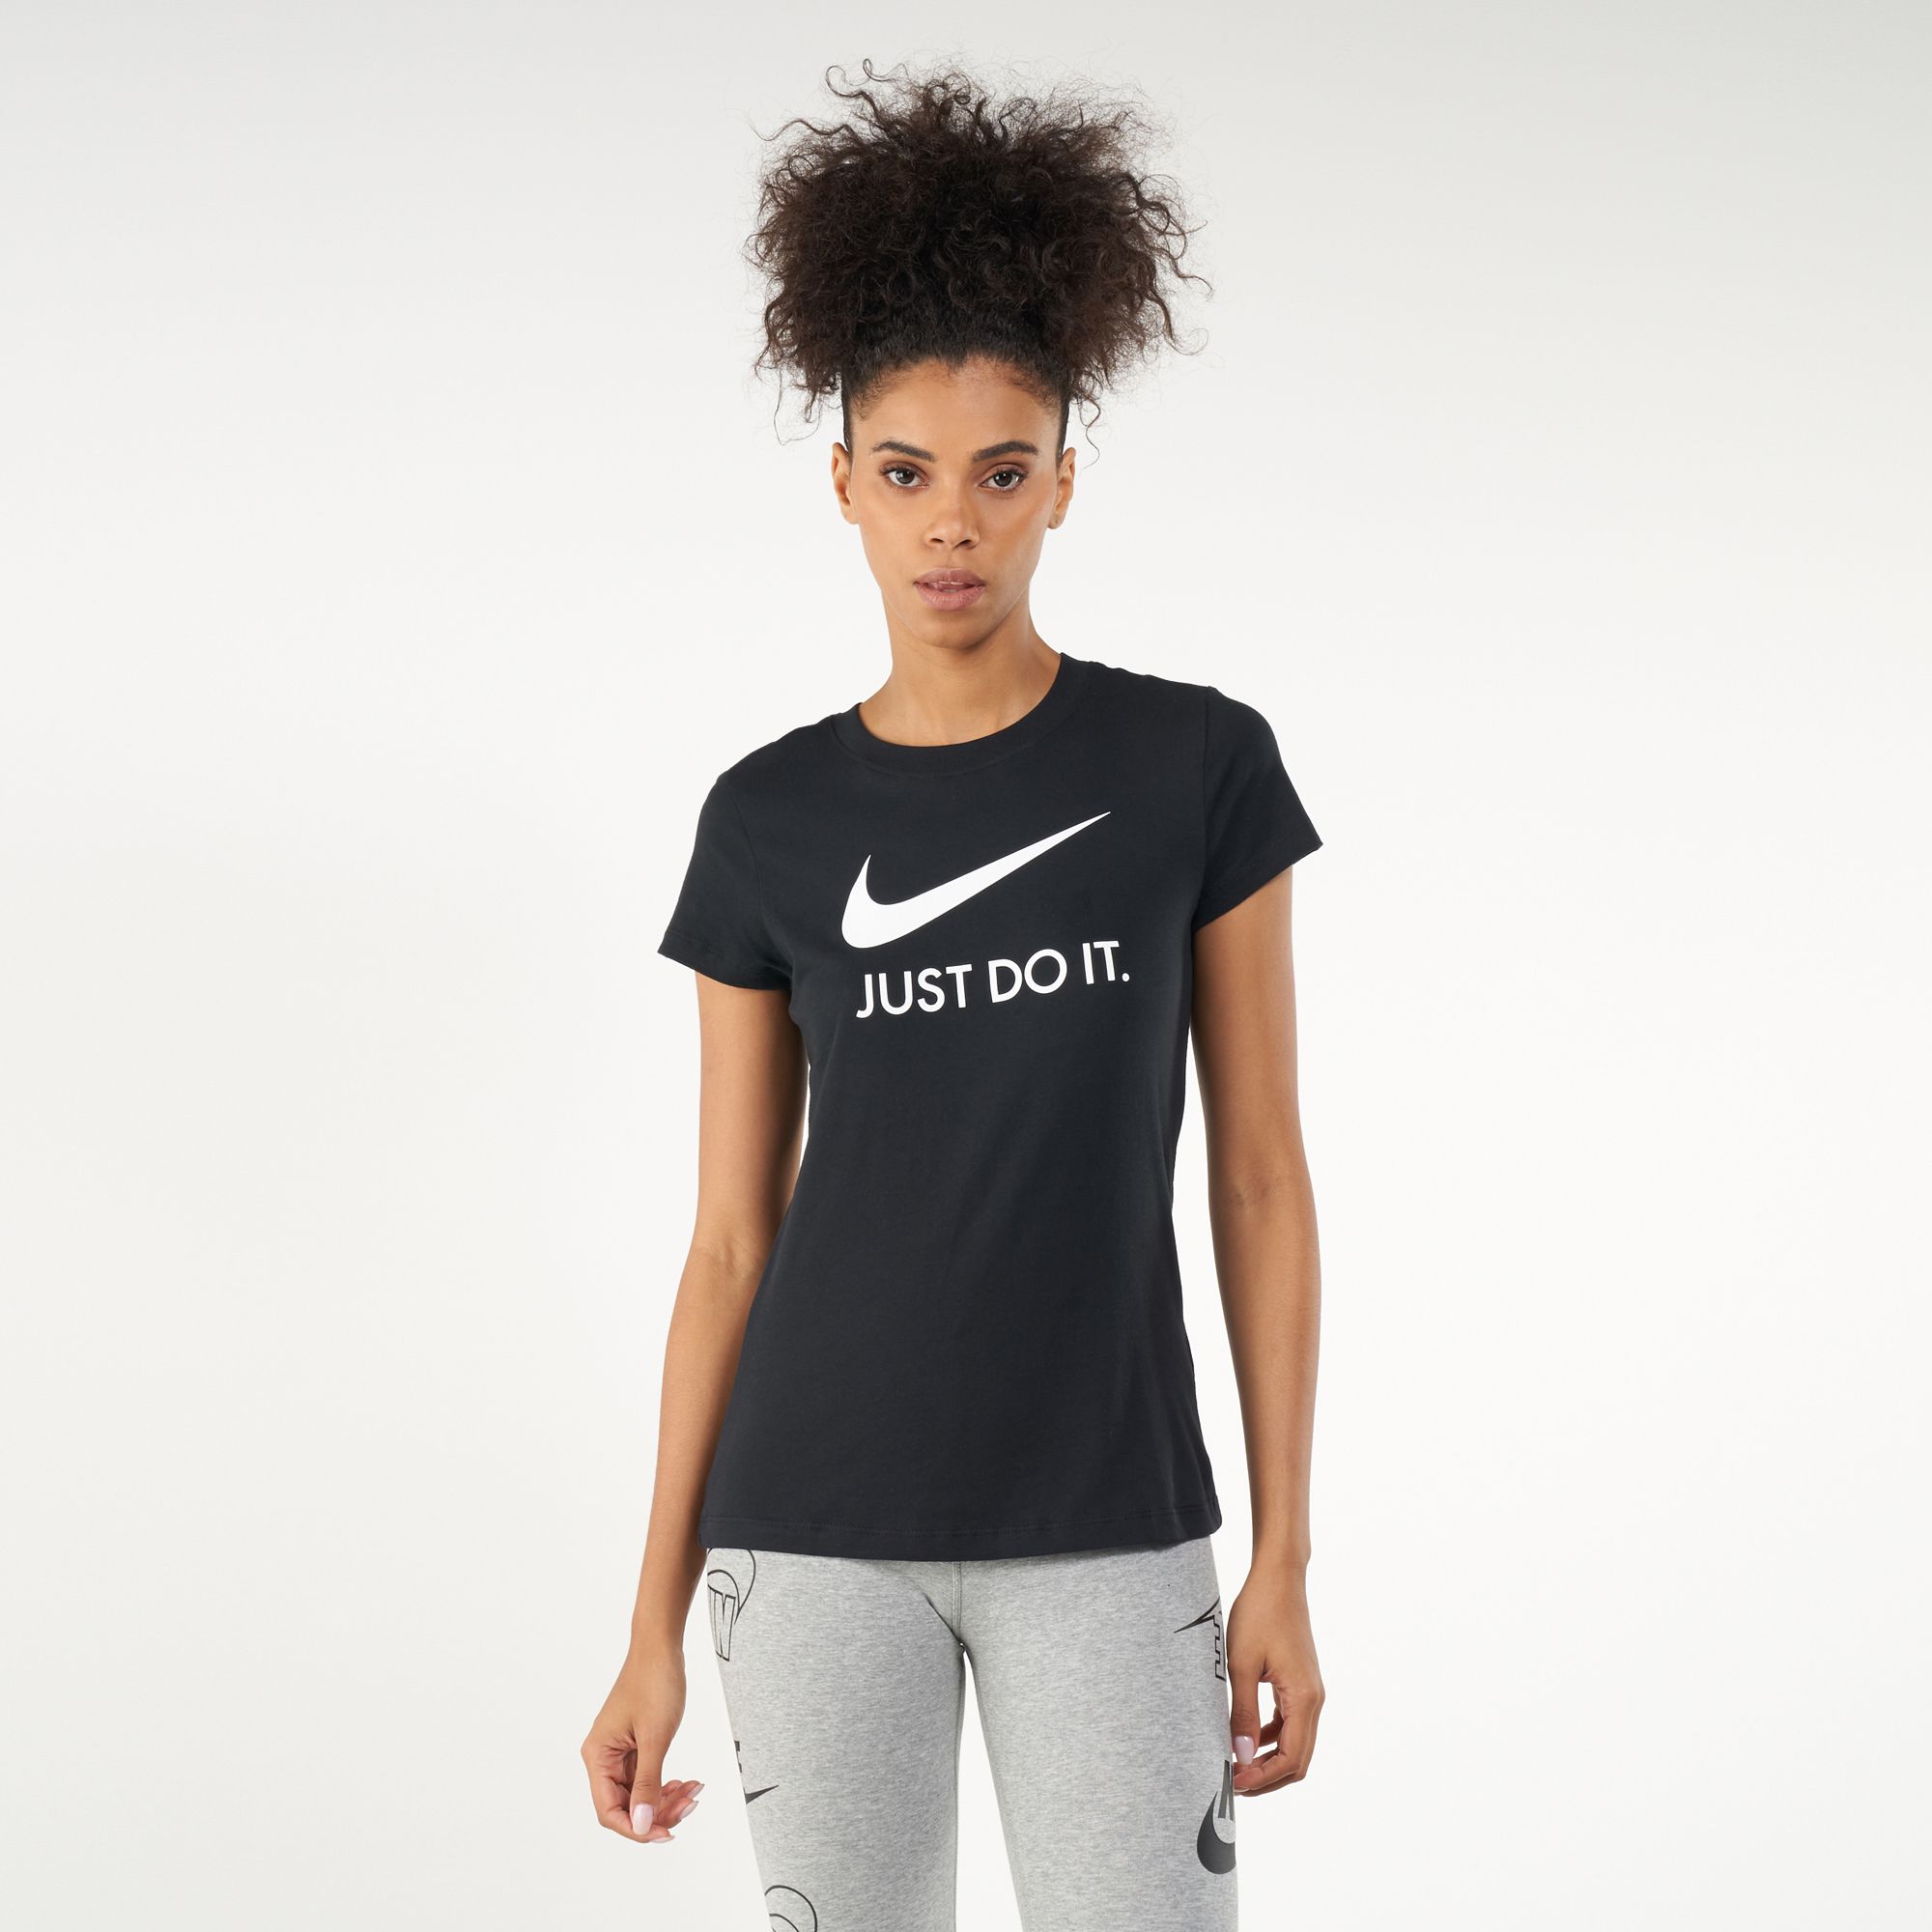 Buy Nike Women's Sportswear Just Do It T-Shirt Online in Dubai, UAE | SSS